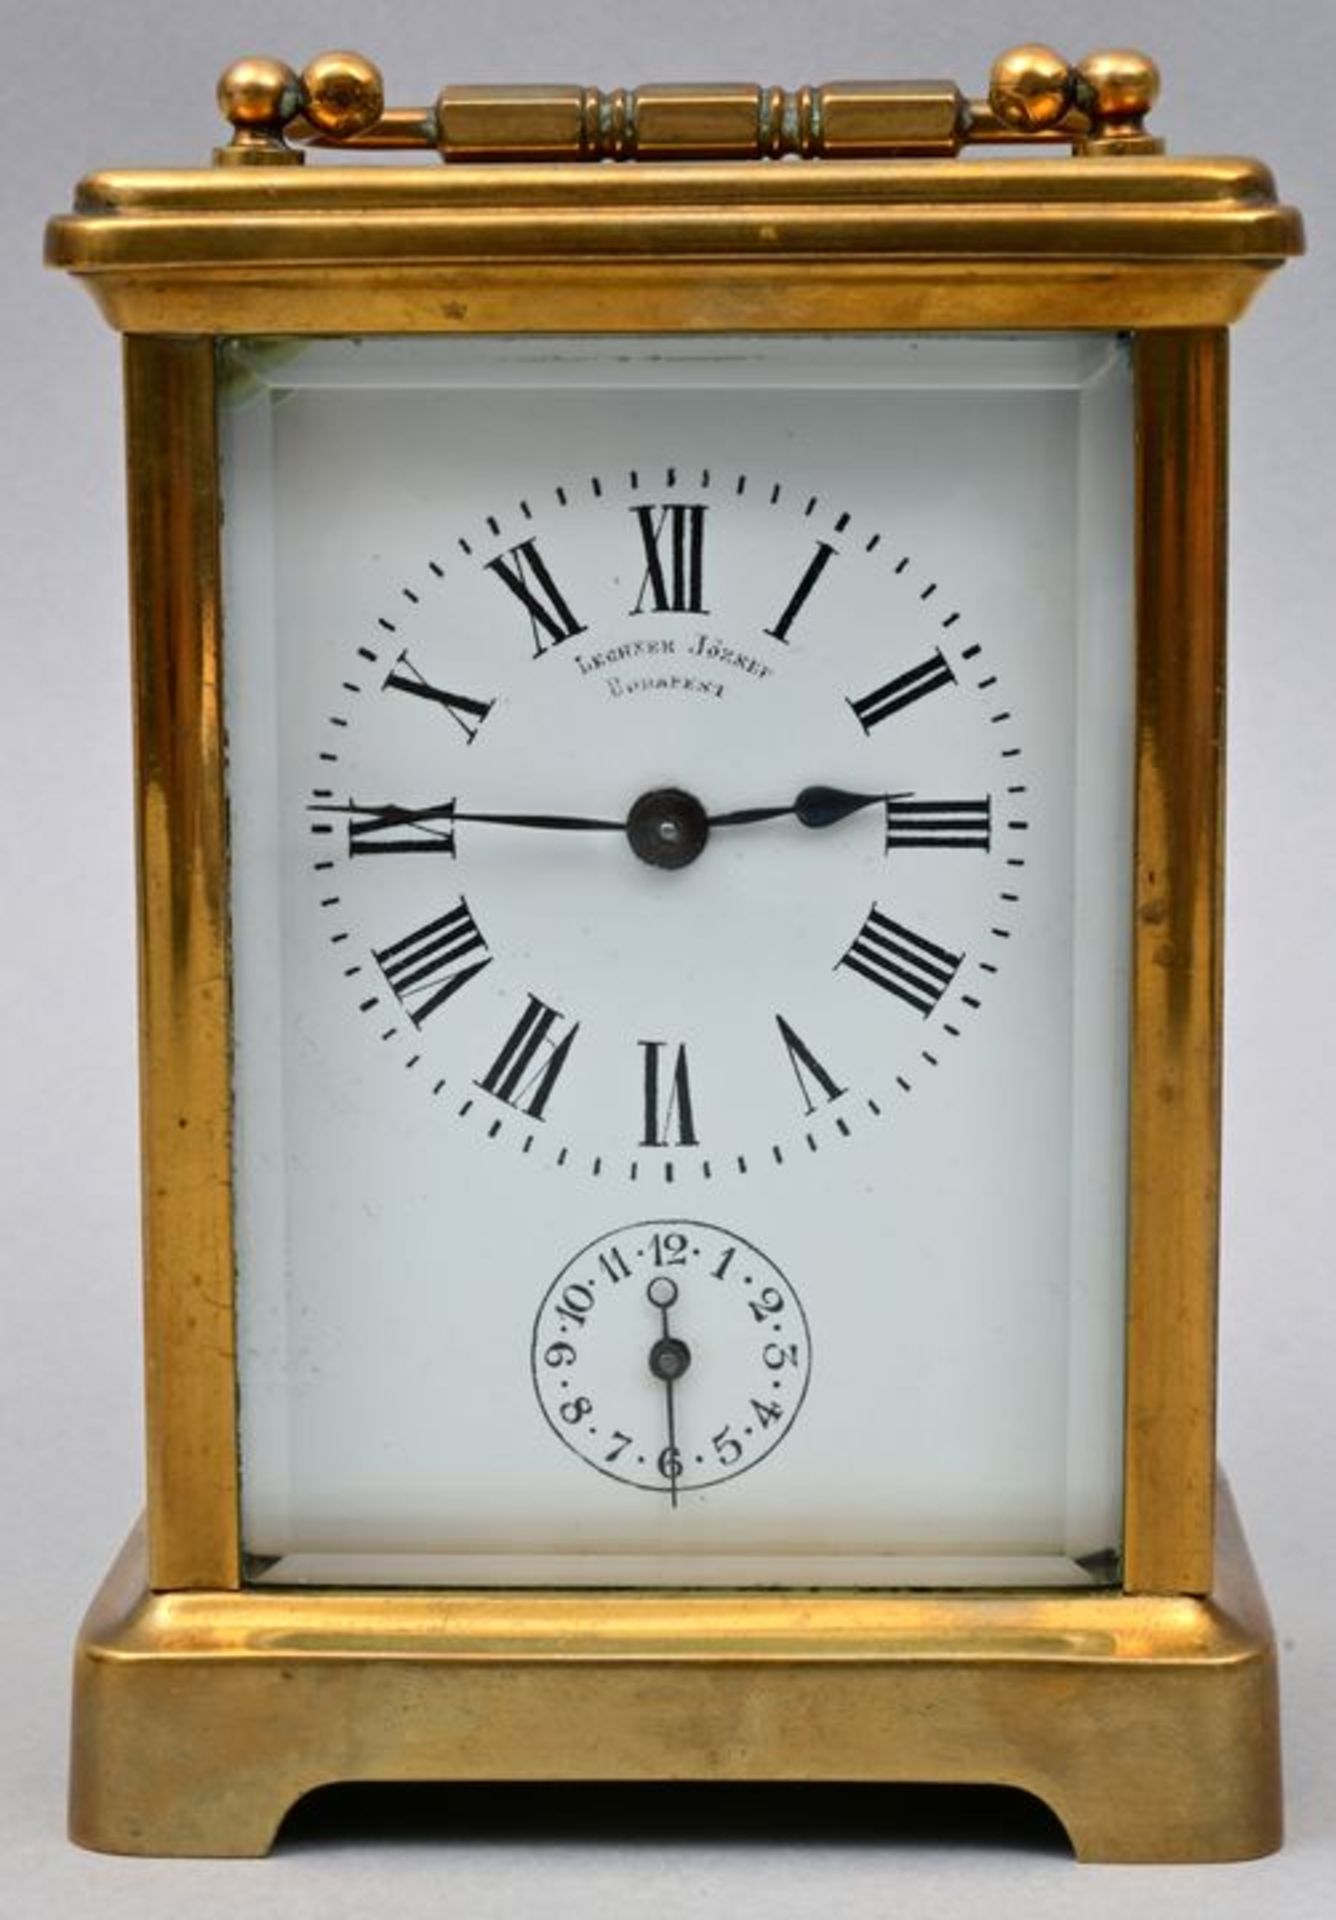 Reiseuhr / Travel clock